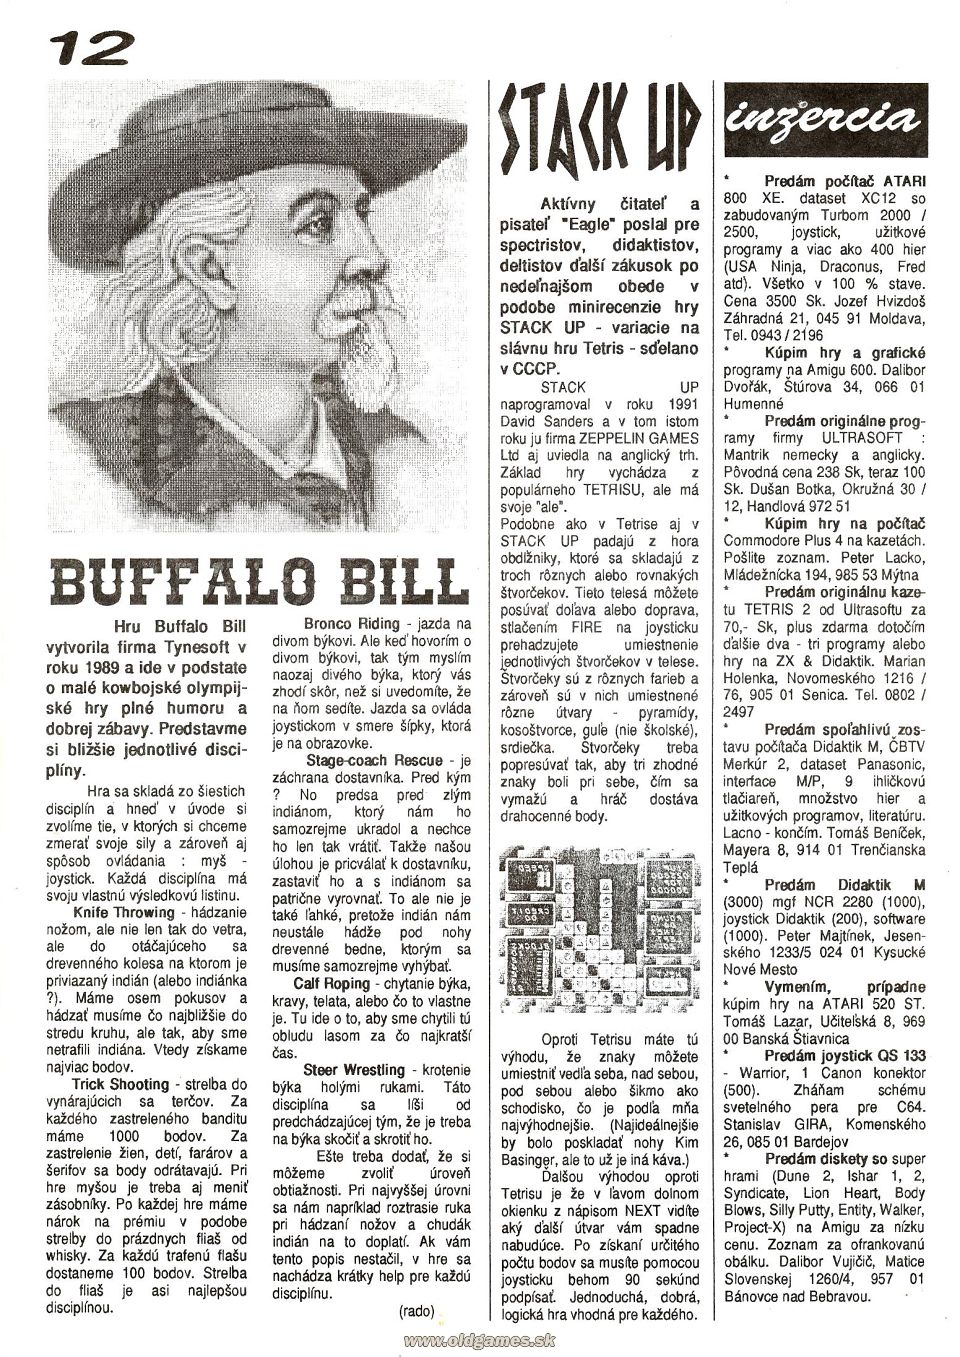 Buffalo Bill, Stack Up - Návody